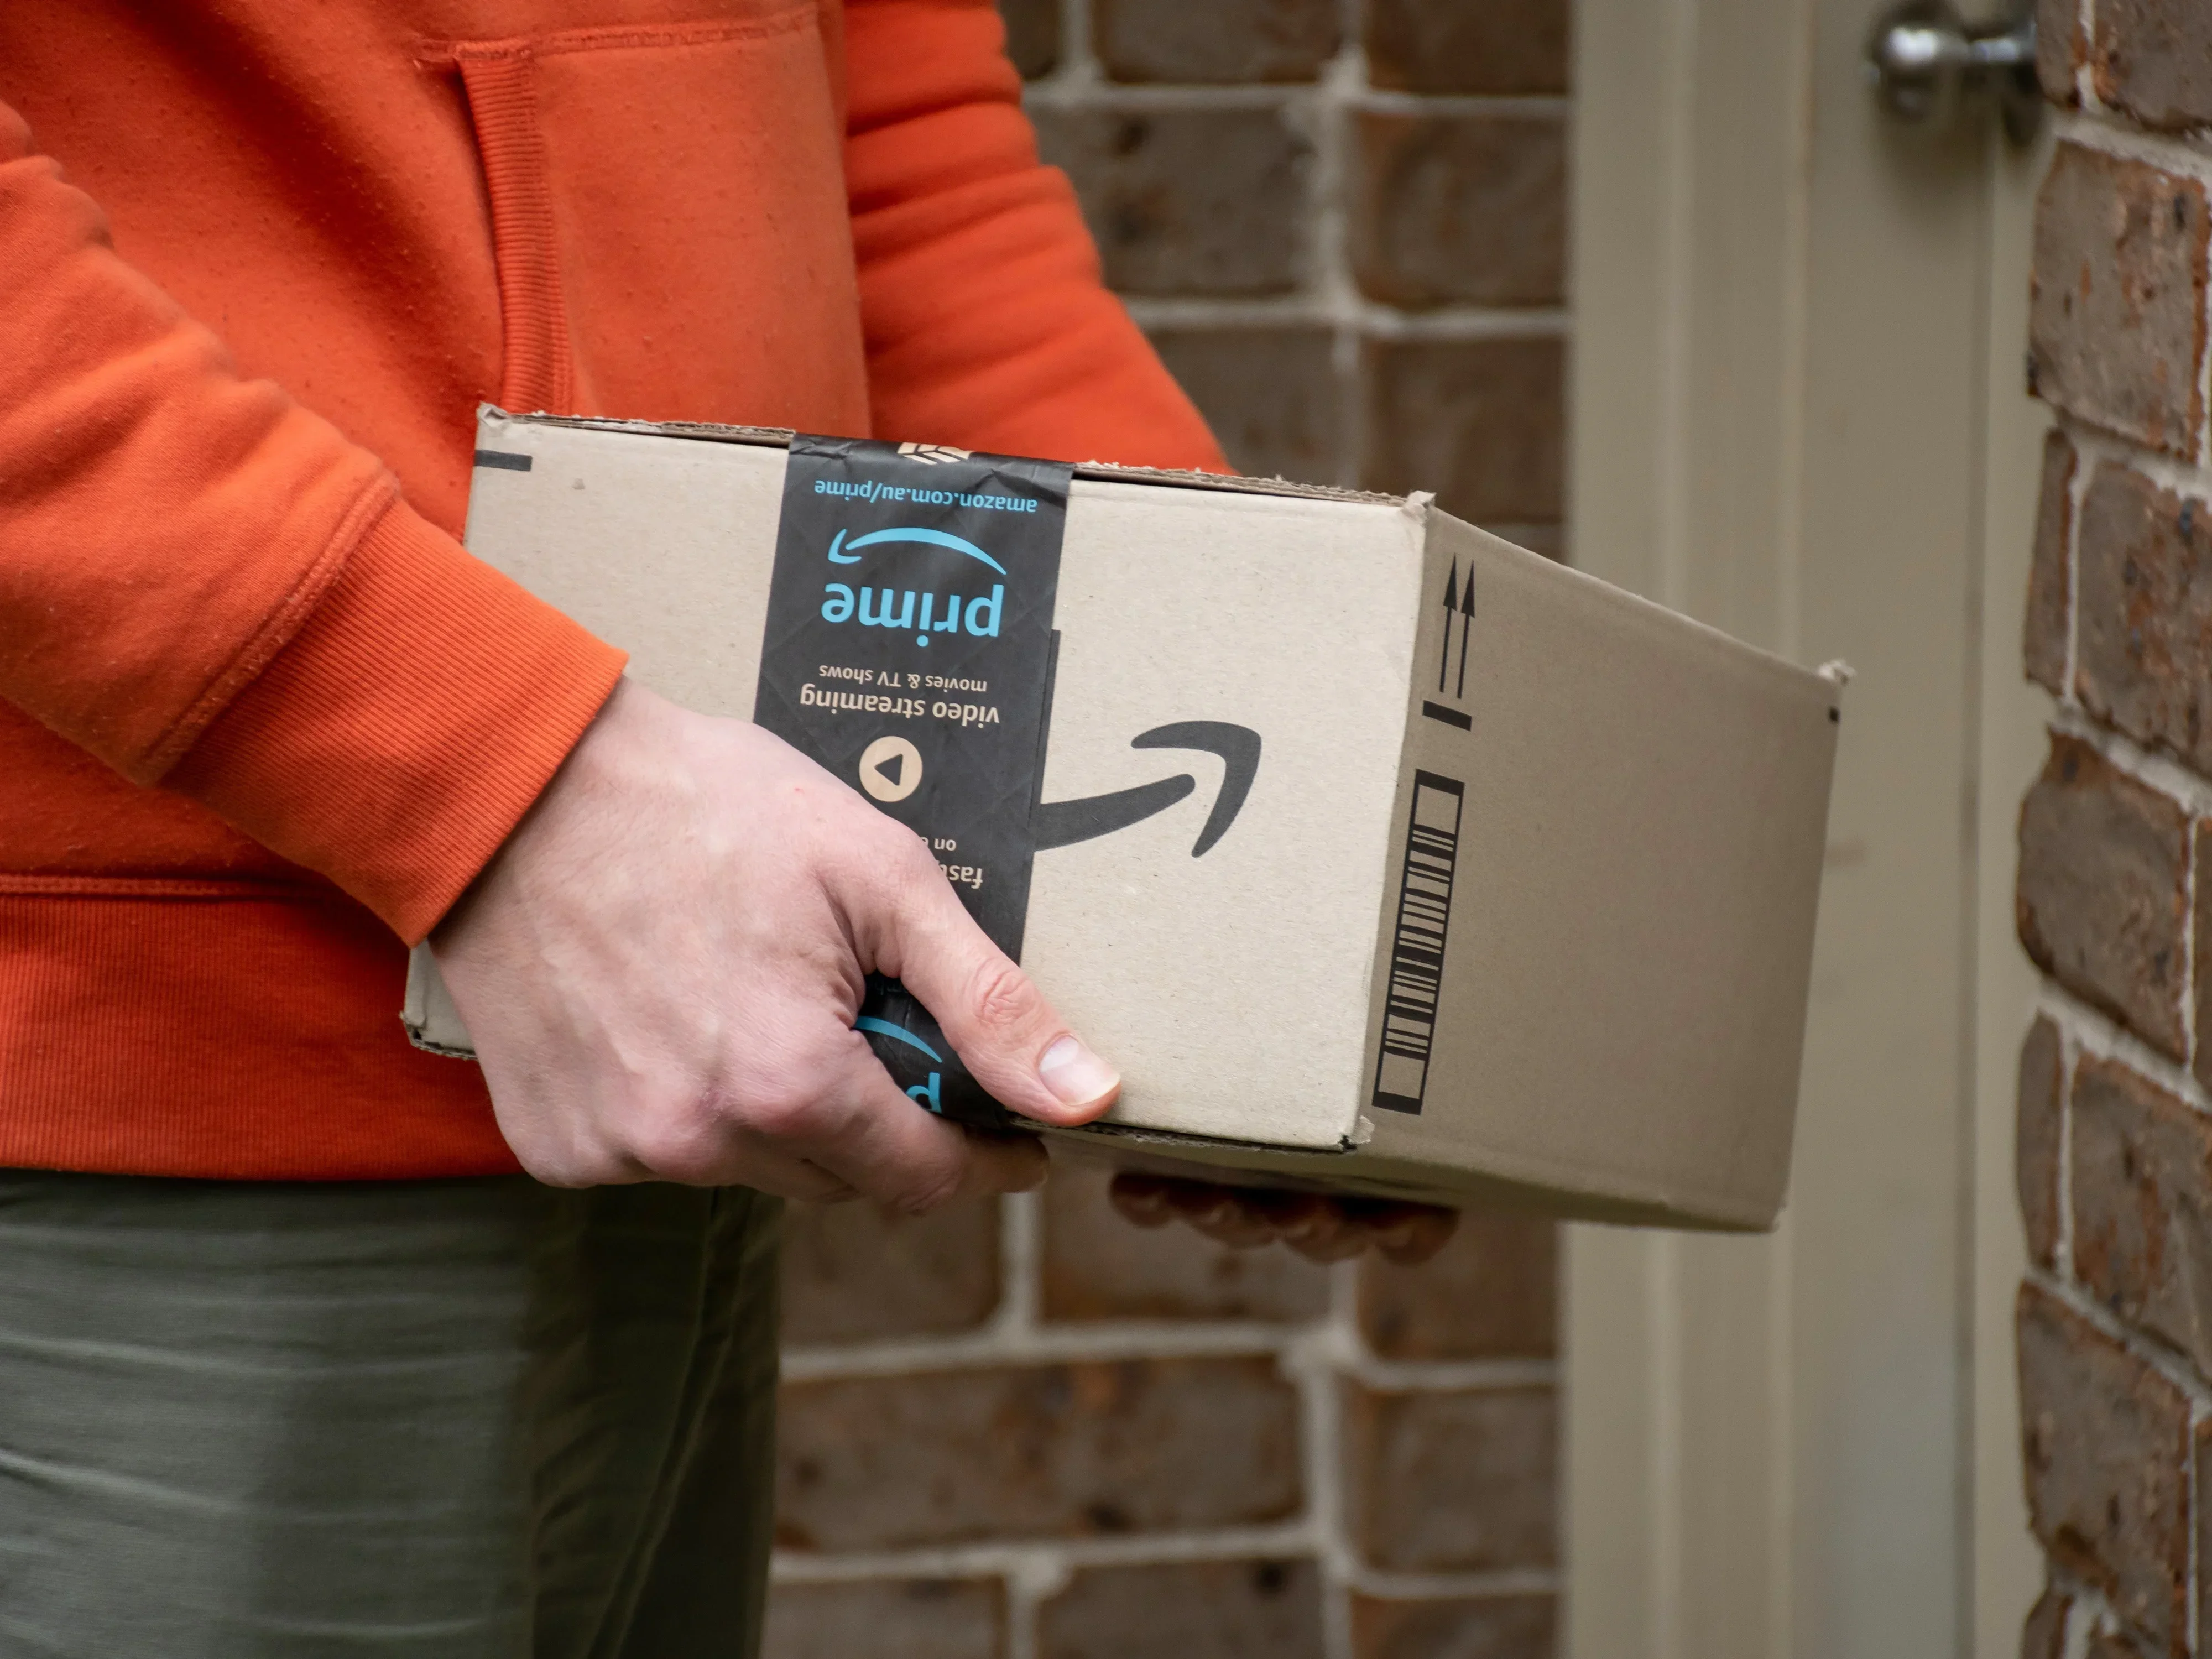 #Amazon warnt vor zugestellten Paketen – fiese Falle